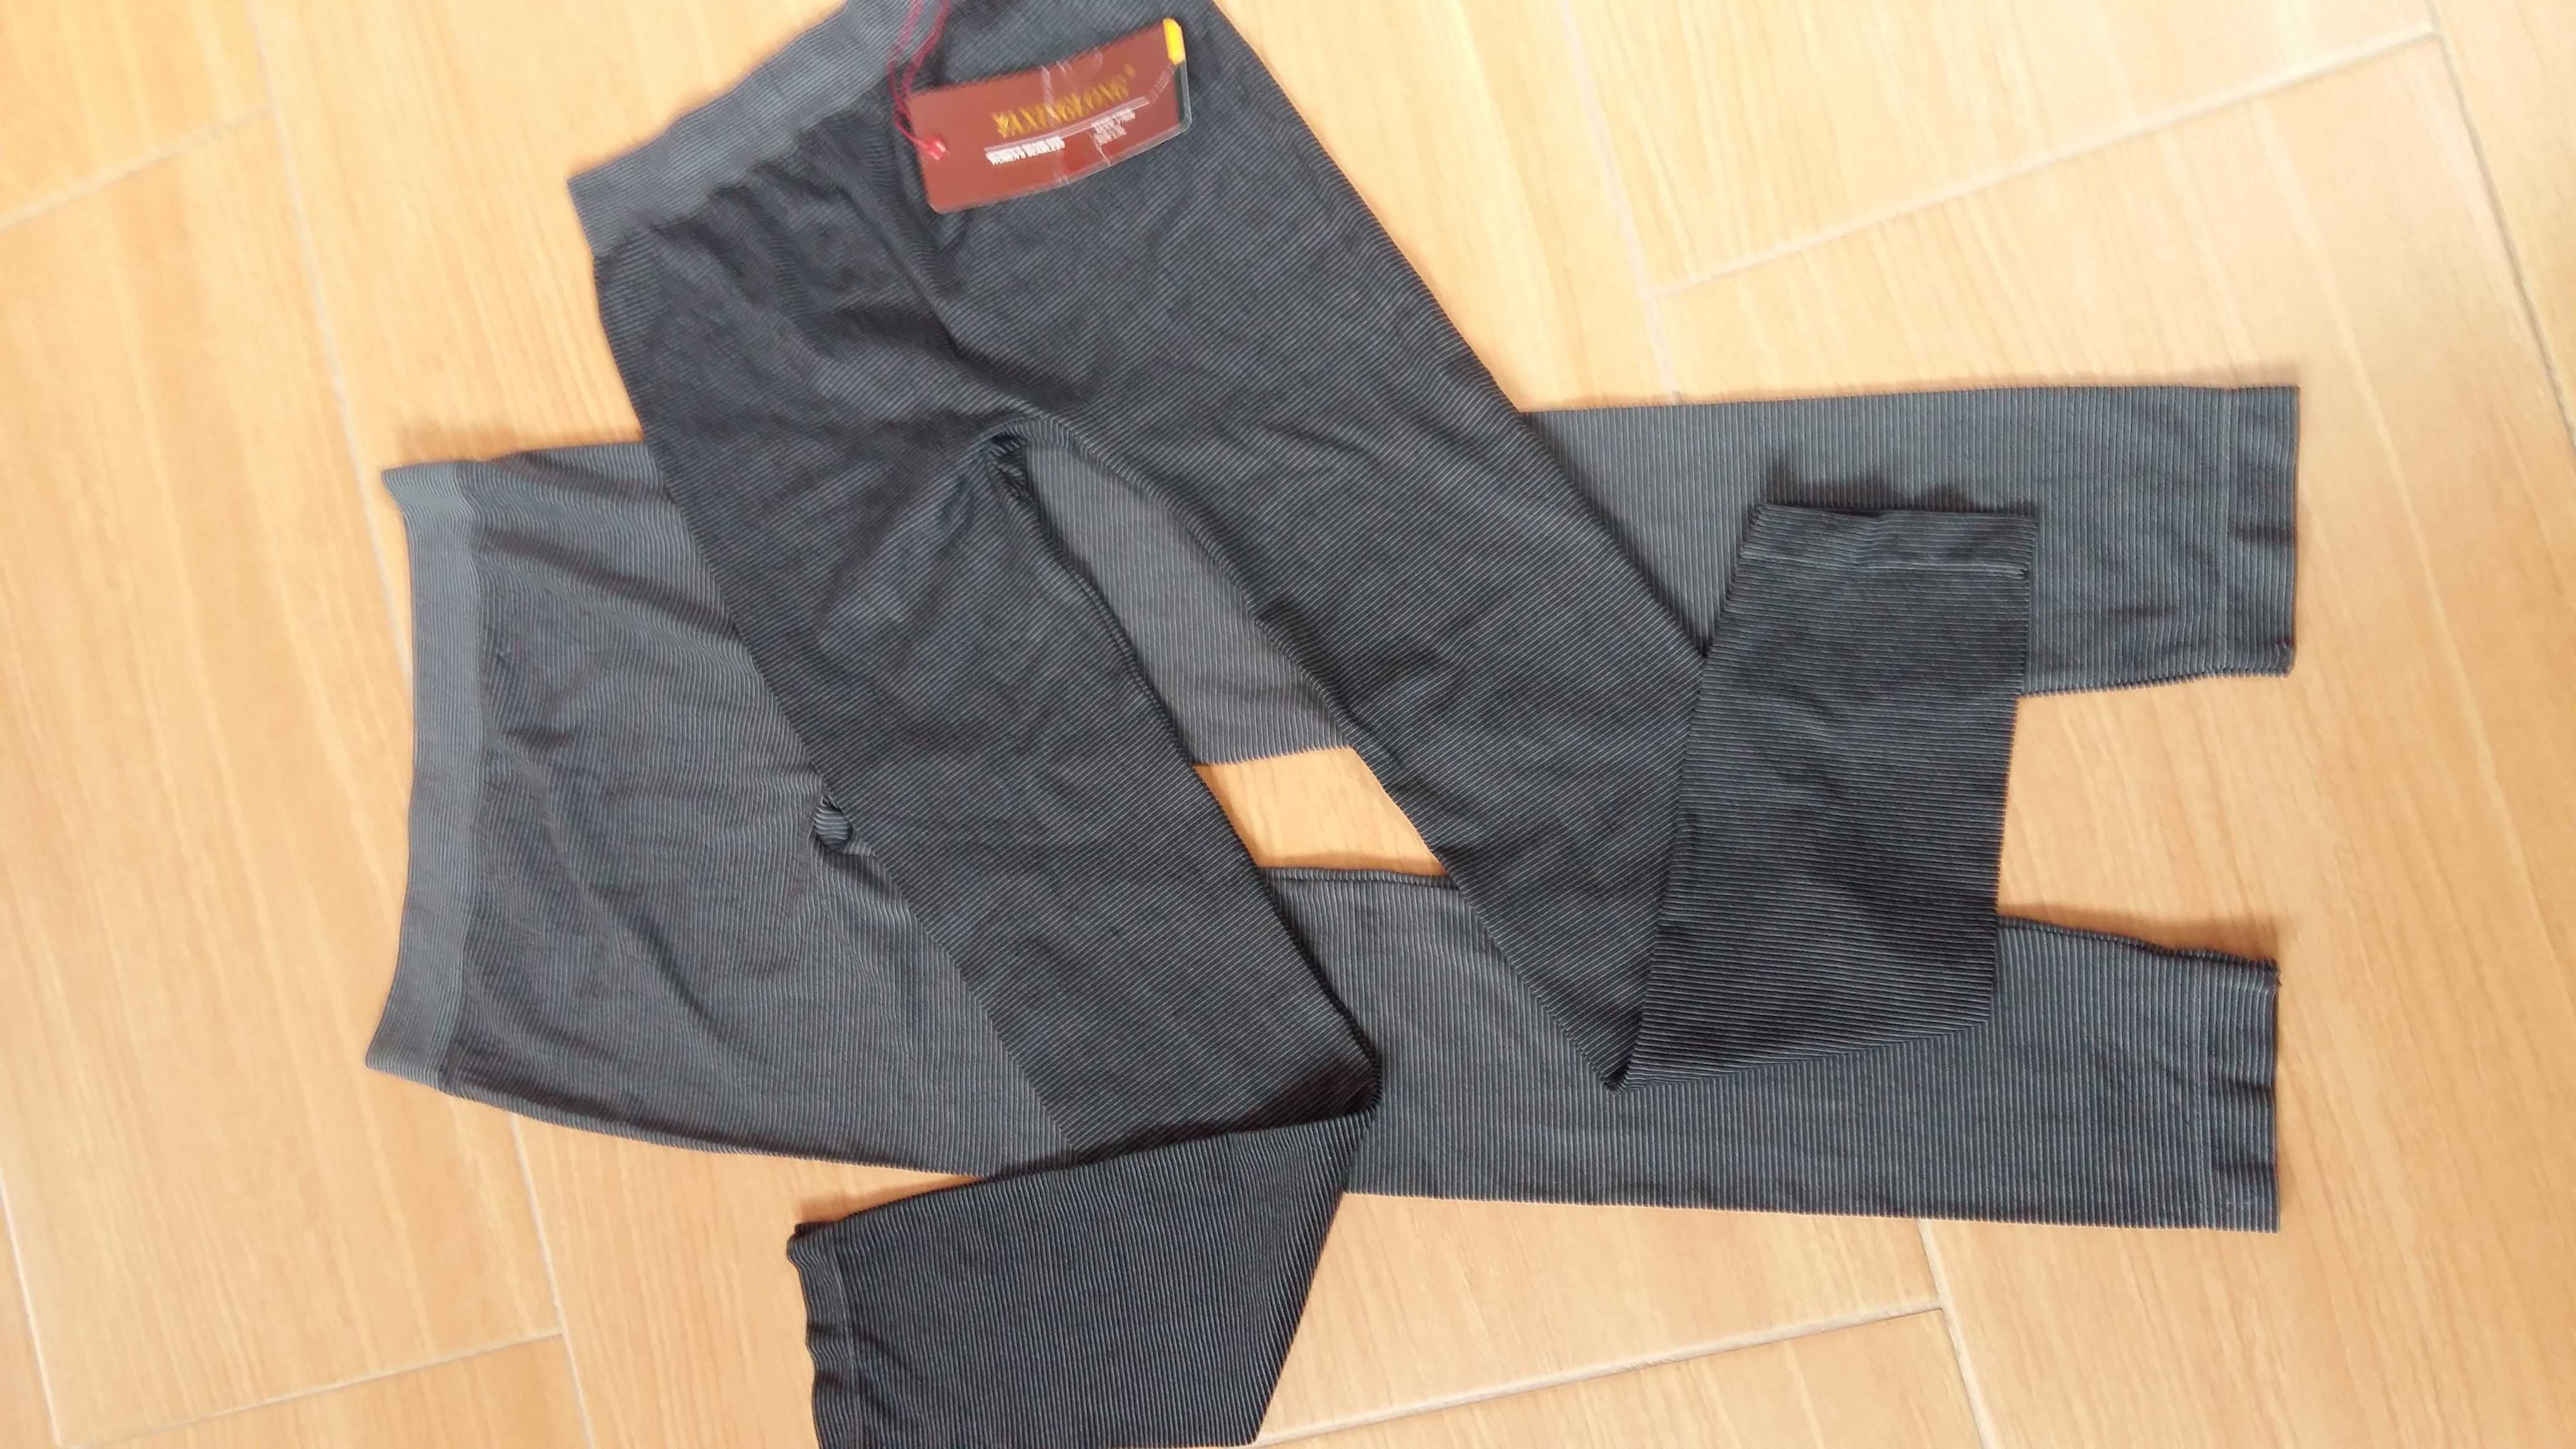 Leginsy L-XL 2pak szare elastyczne nowe getry,spodnie,rajstopy